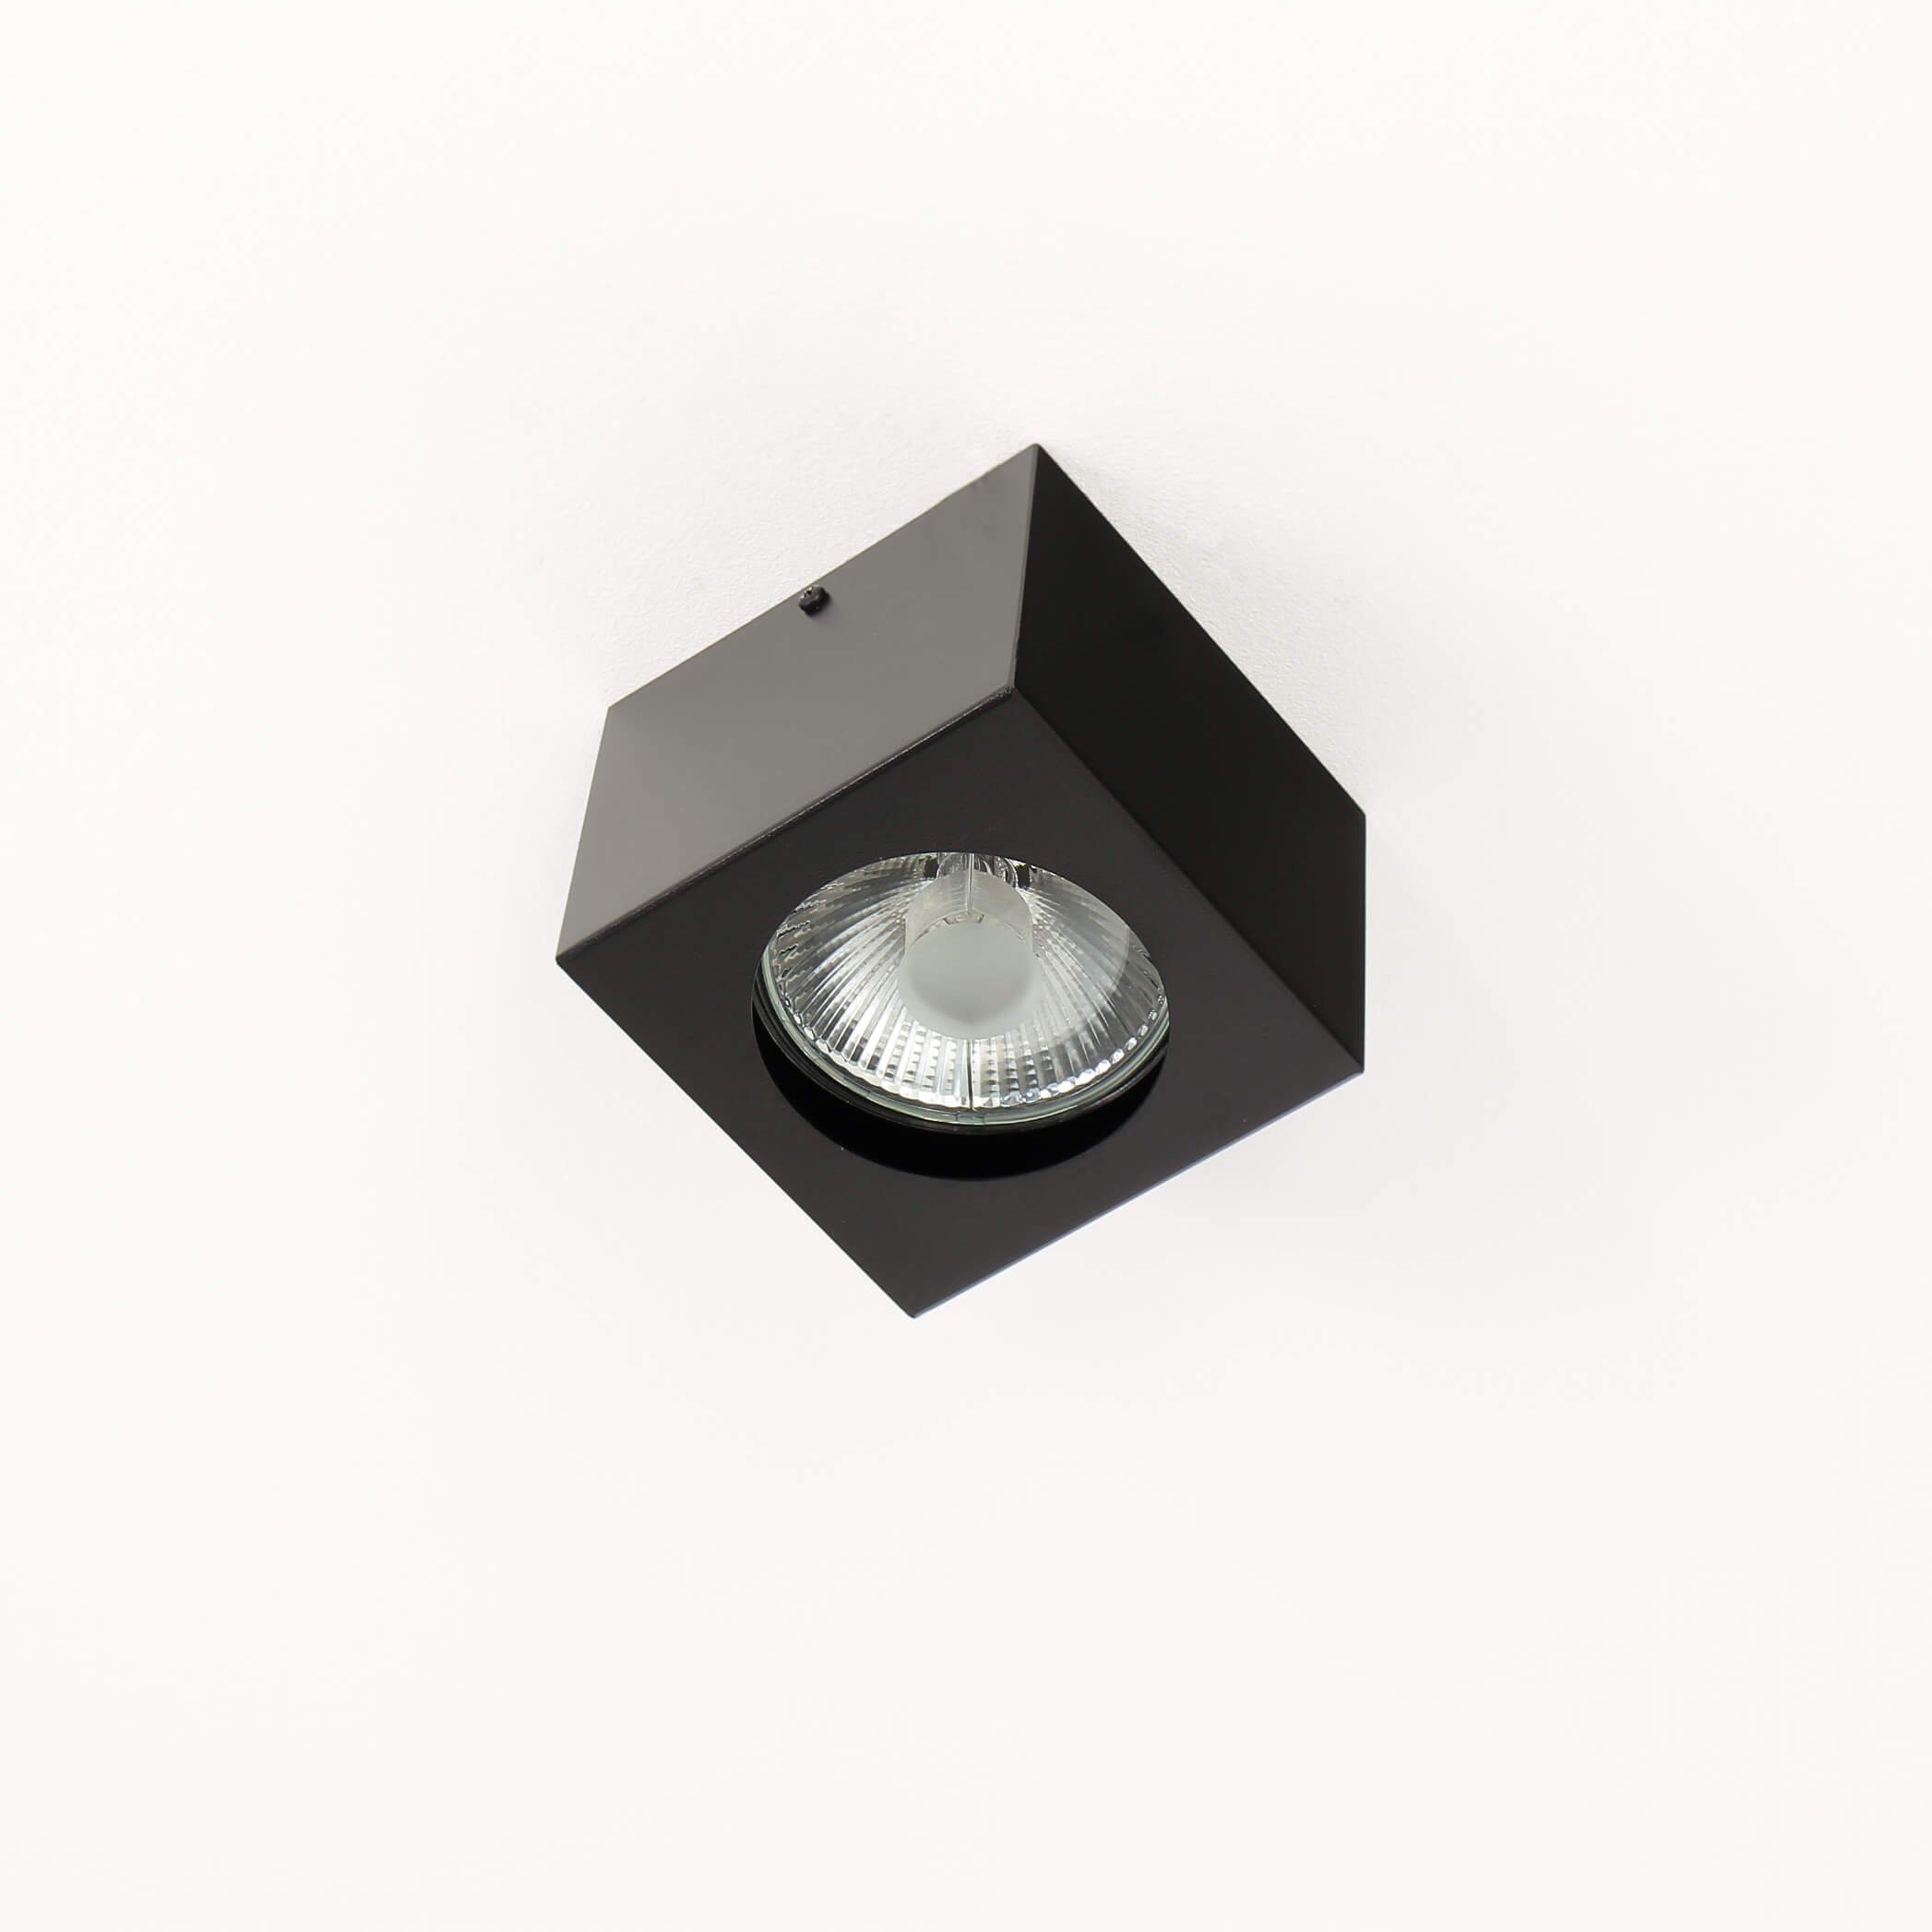 Strahler x cm 14 Warmweiß, wechselbar, 14 x Licht-Erlebnisse eckig Deckenlampe 10 NEX, LED Deckenleuchte Spot GU10